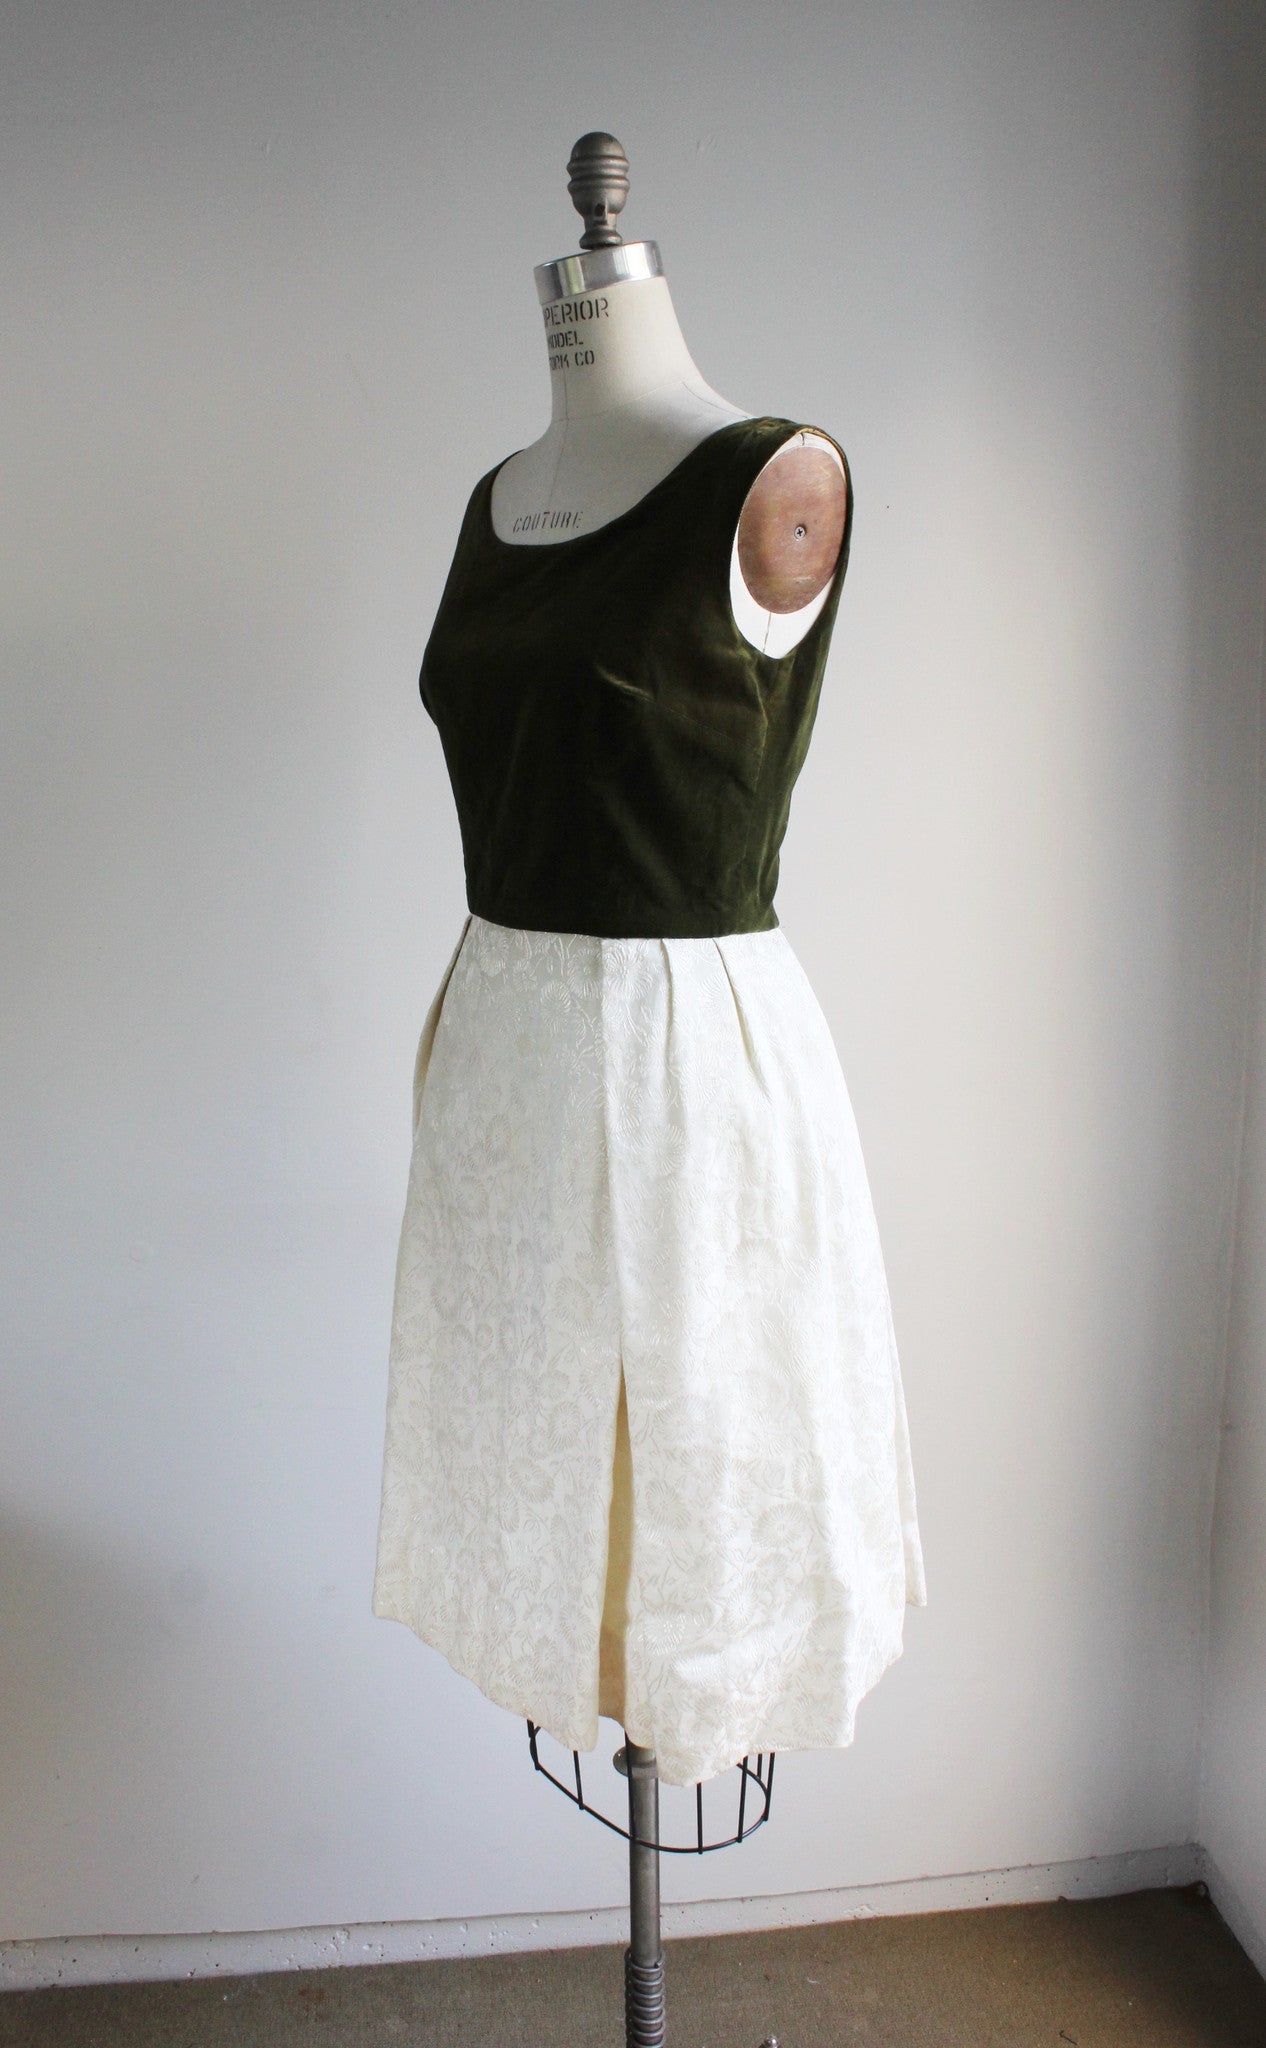 Vintage 1960s Party Dress, Dark Green Velvet Bodice White Damask Skirt